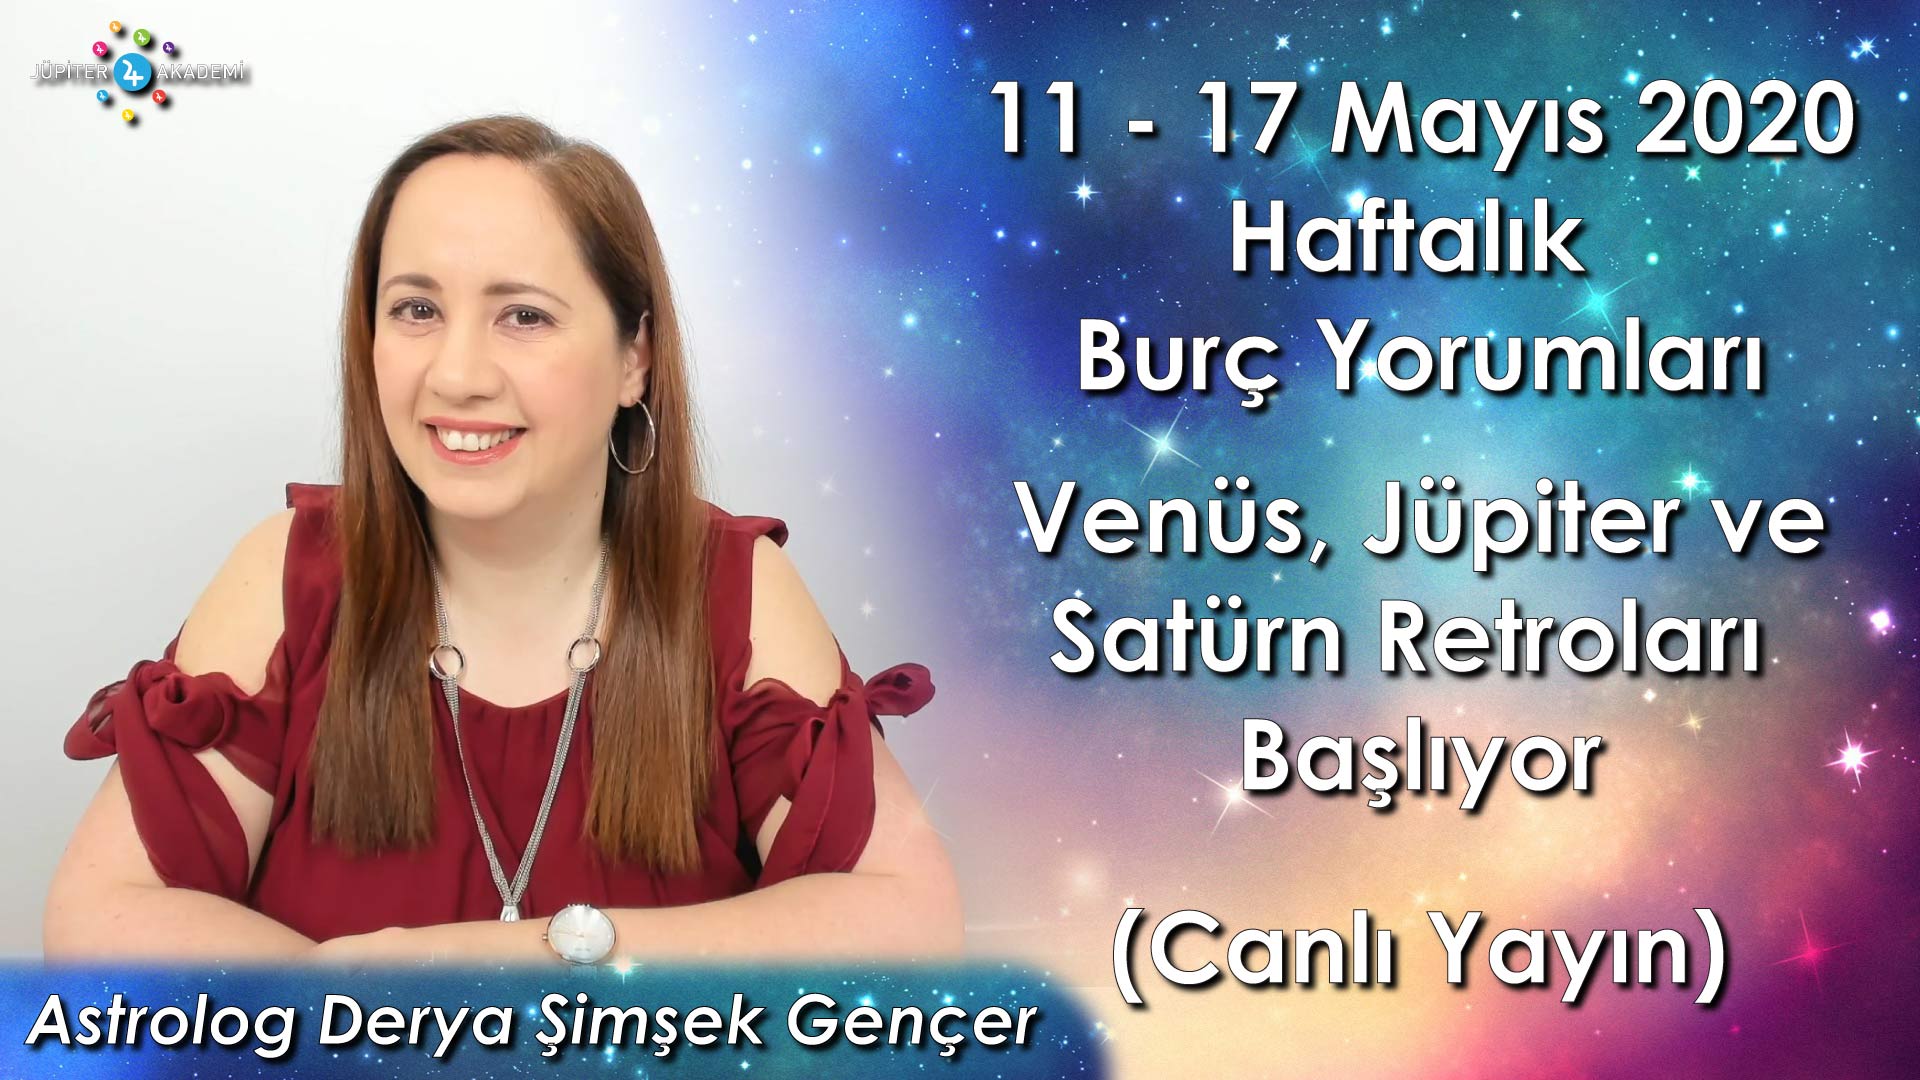 11 - 17 Mayıs 2020 Haftalık Burç Yorumları, Venüs, Jüpiter, Satürn Retroları